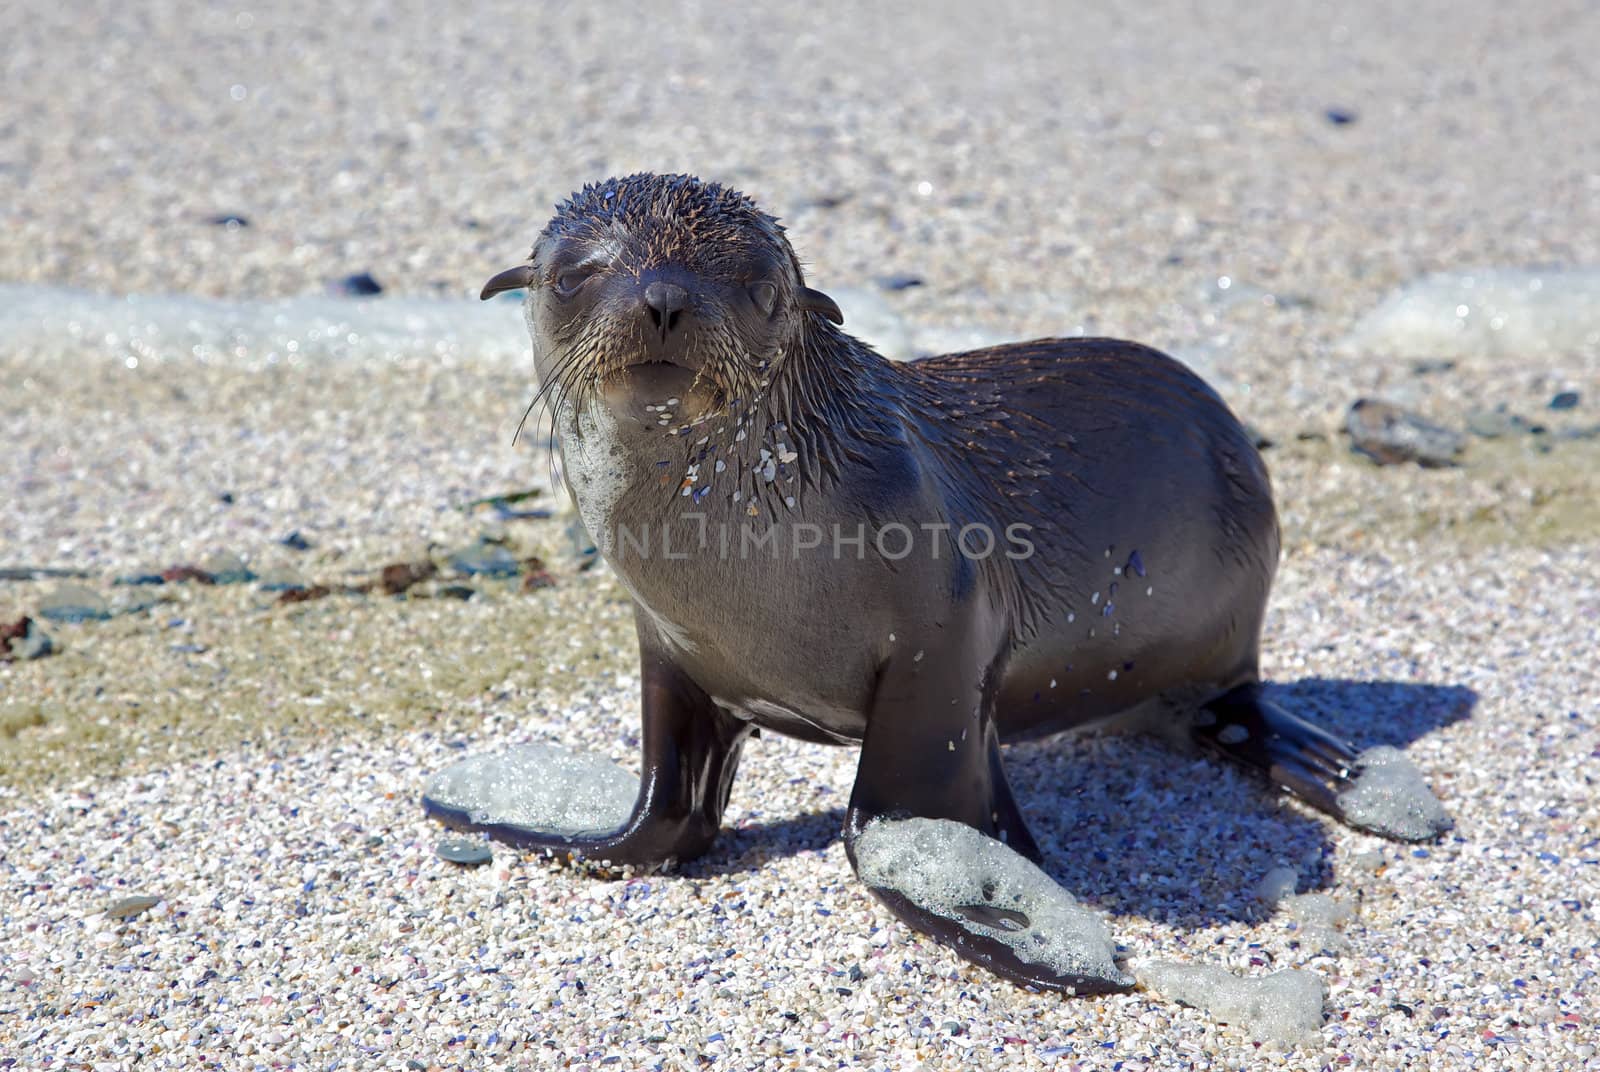 Cape Fur Seal by zambezi